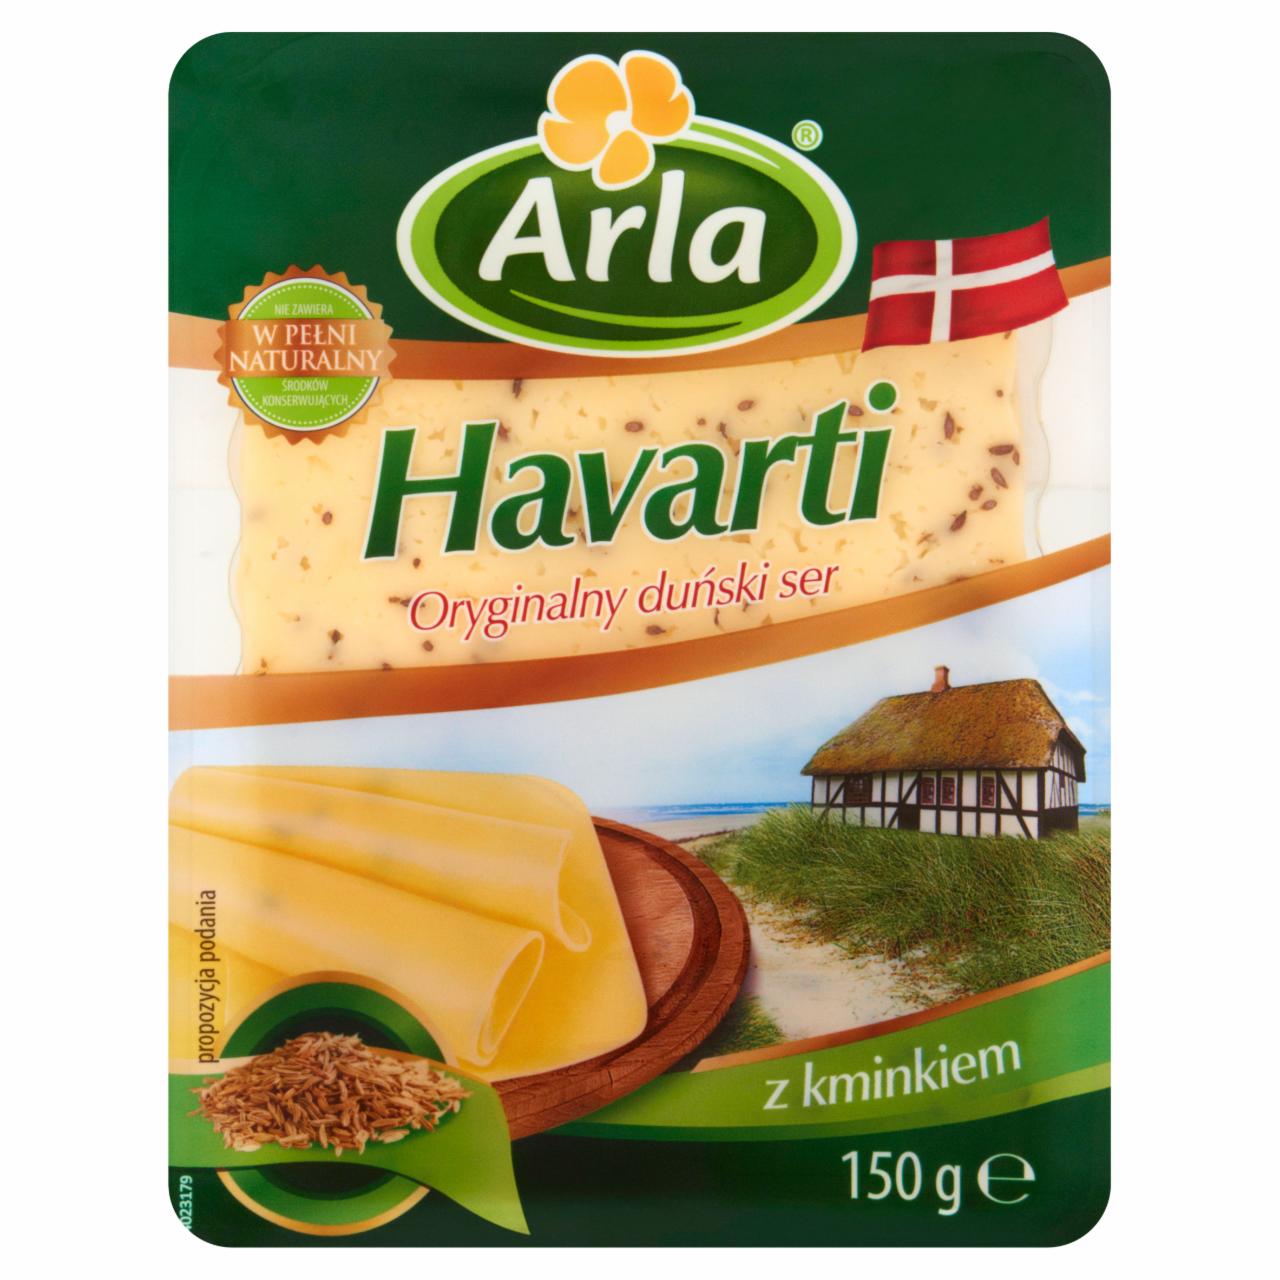 Zdjęcia - Arla Havarti Oryginalny duński ser z kminkiem 150 g